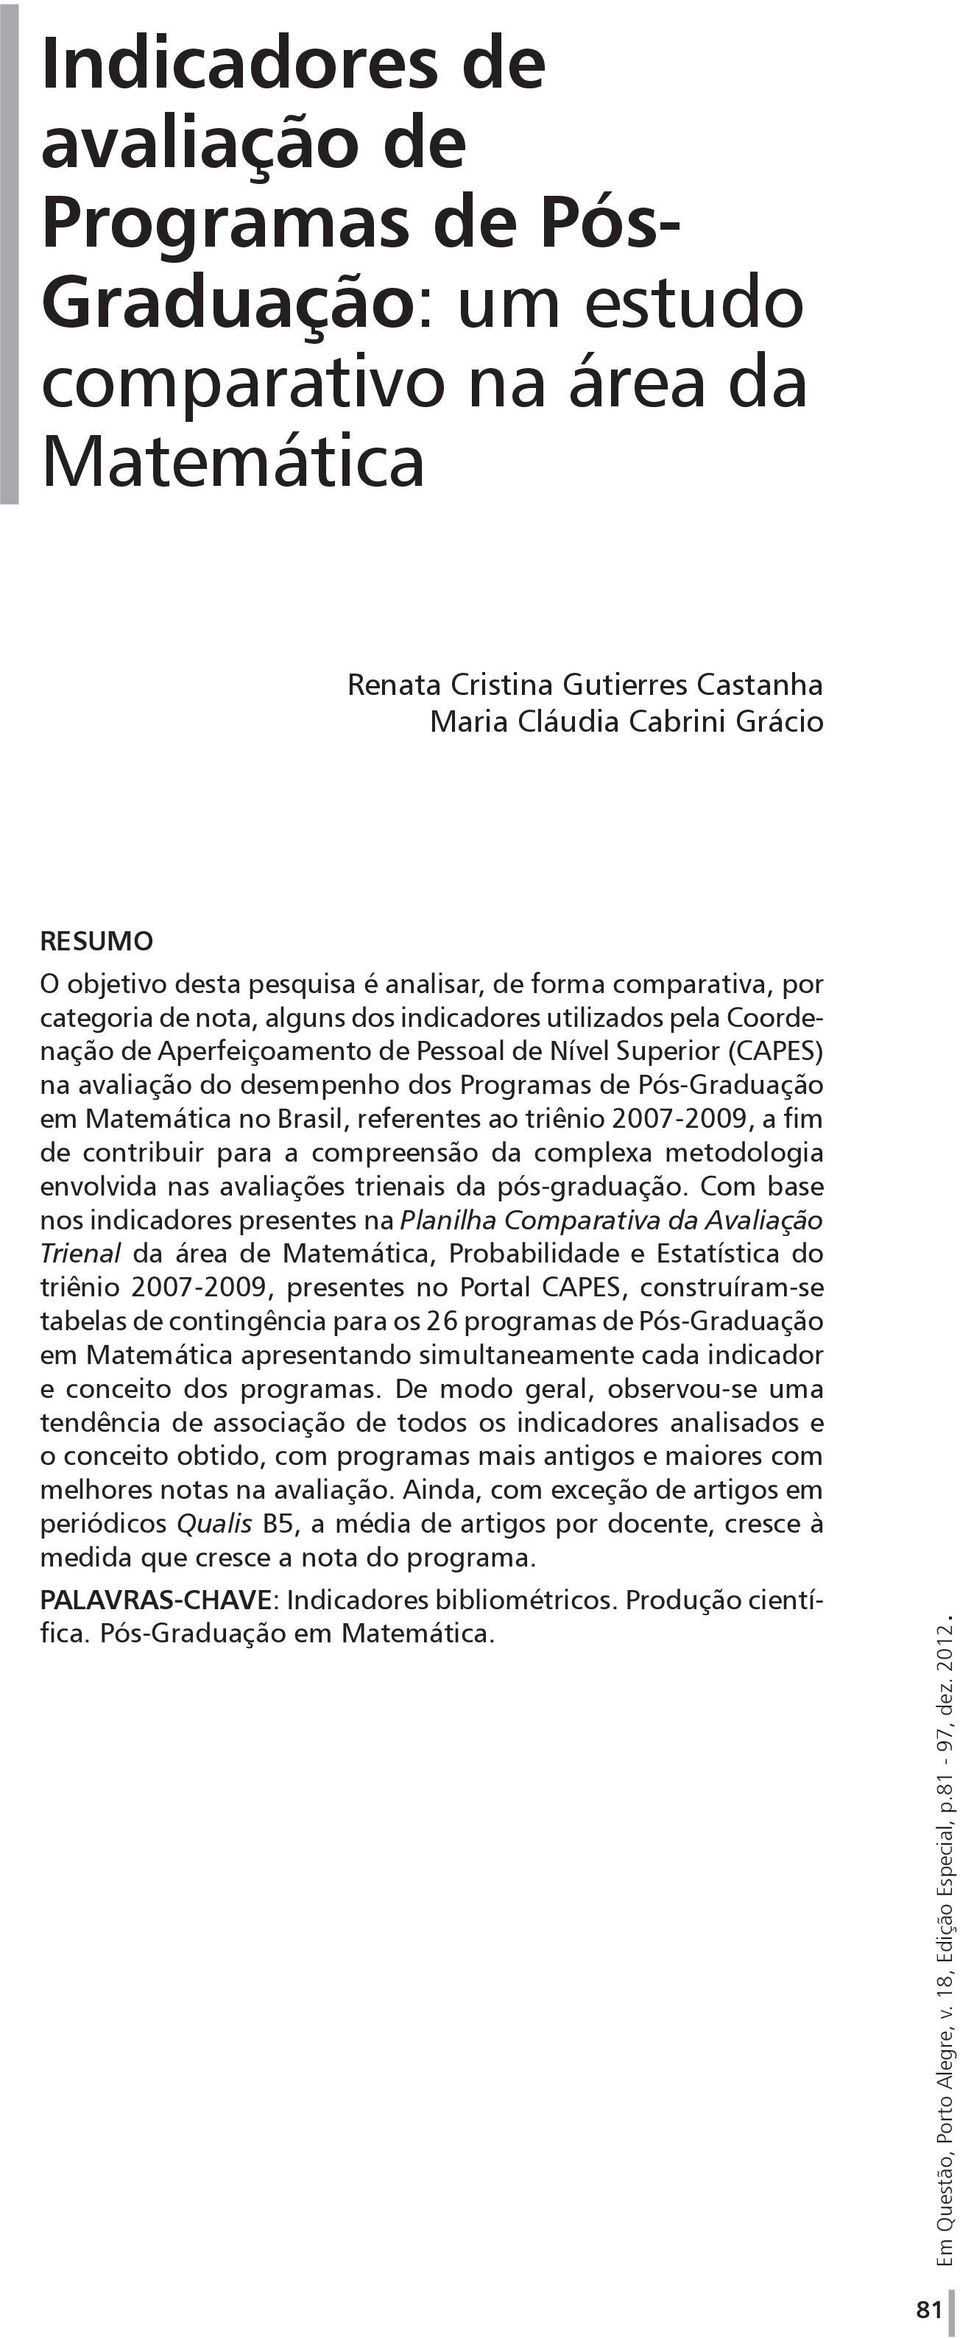 Programas de Pós-Graduação em Matemática no Brasil, referentes ao triênio 2007-2009, a fim de contribuir para a compreensão da complexa metodologia envolvida nas avaliações trienais da pós-graduação.